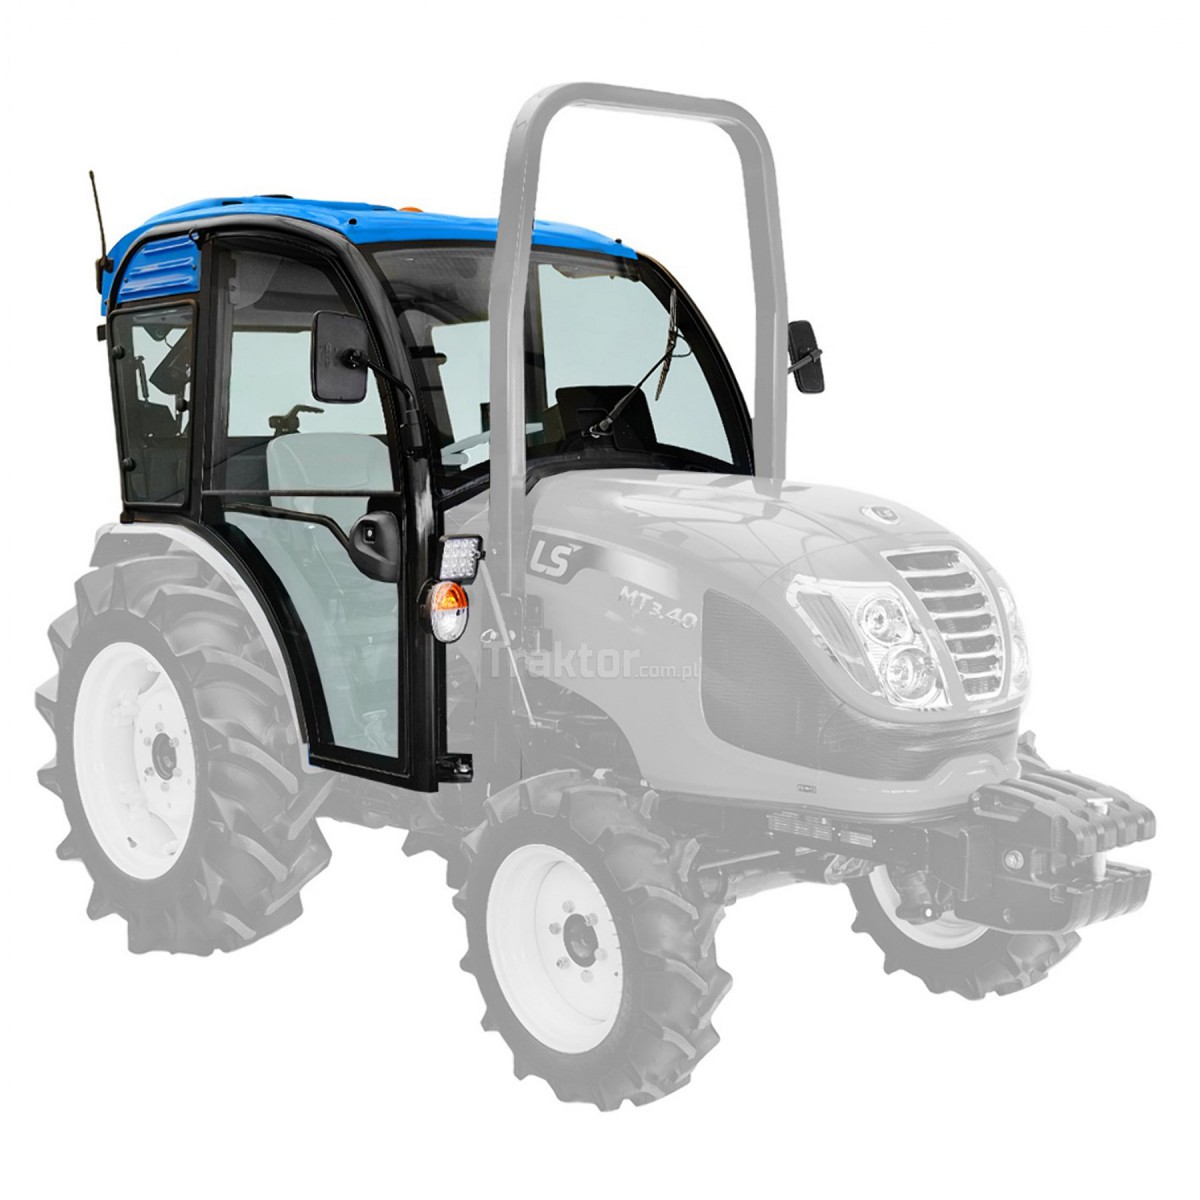 Cabina QT con aire acondicionado para el tractor LS Tractor MT3.35, MT3.40